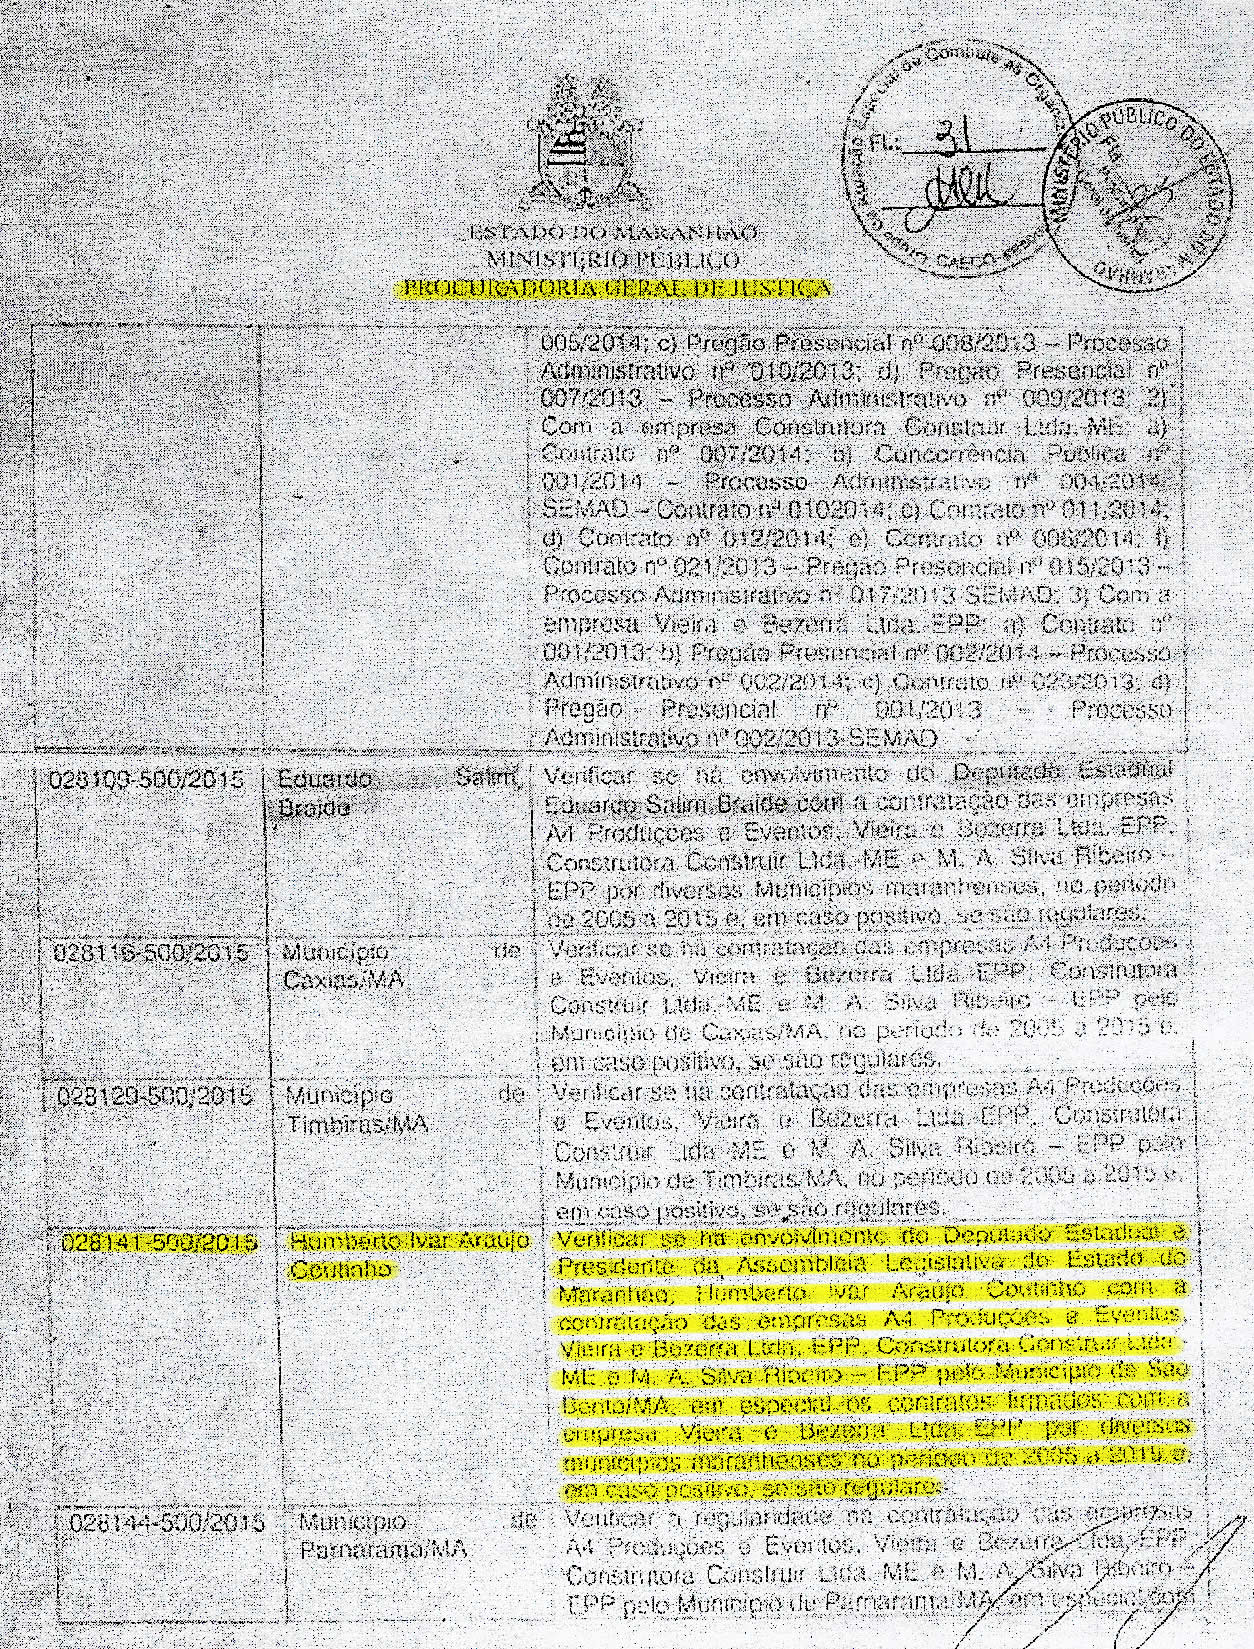 Documento da PGJ que pede a abertura de investigação contra o deputado estadual Humberto Coutinho